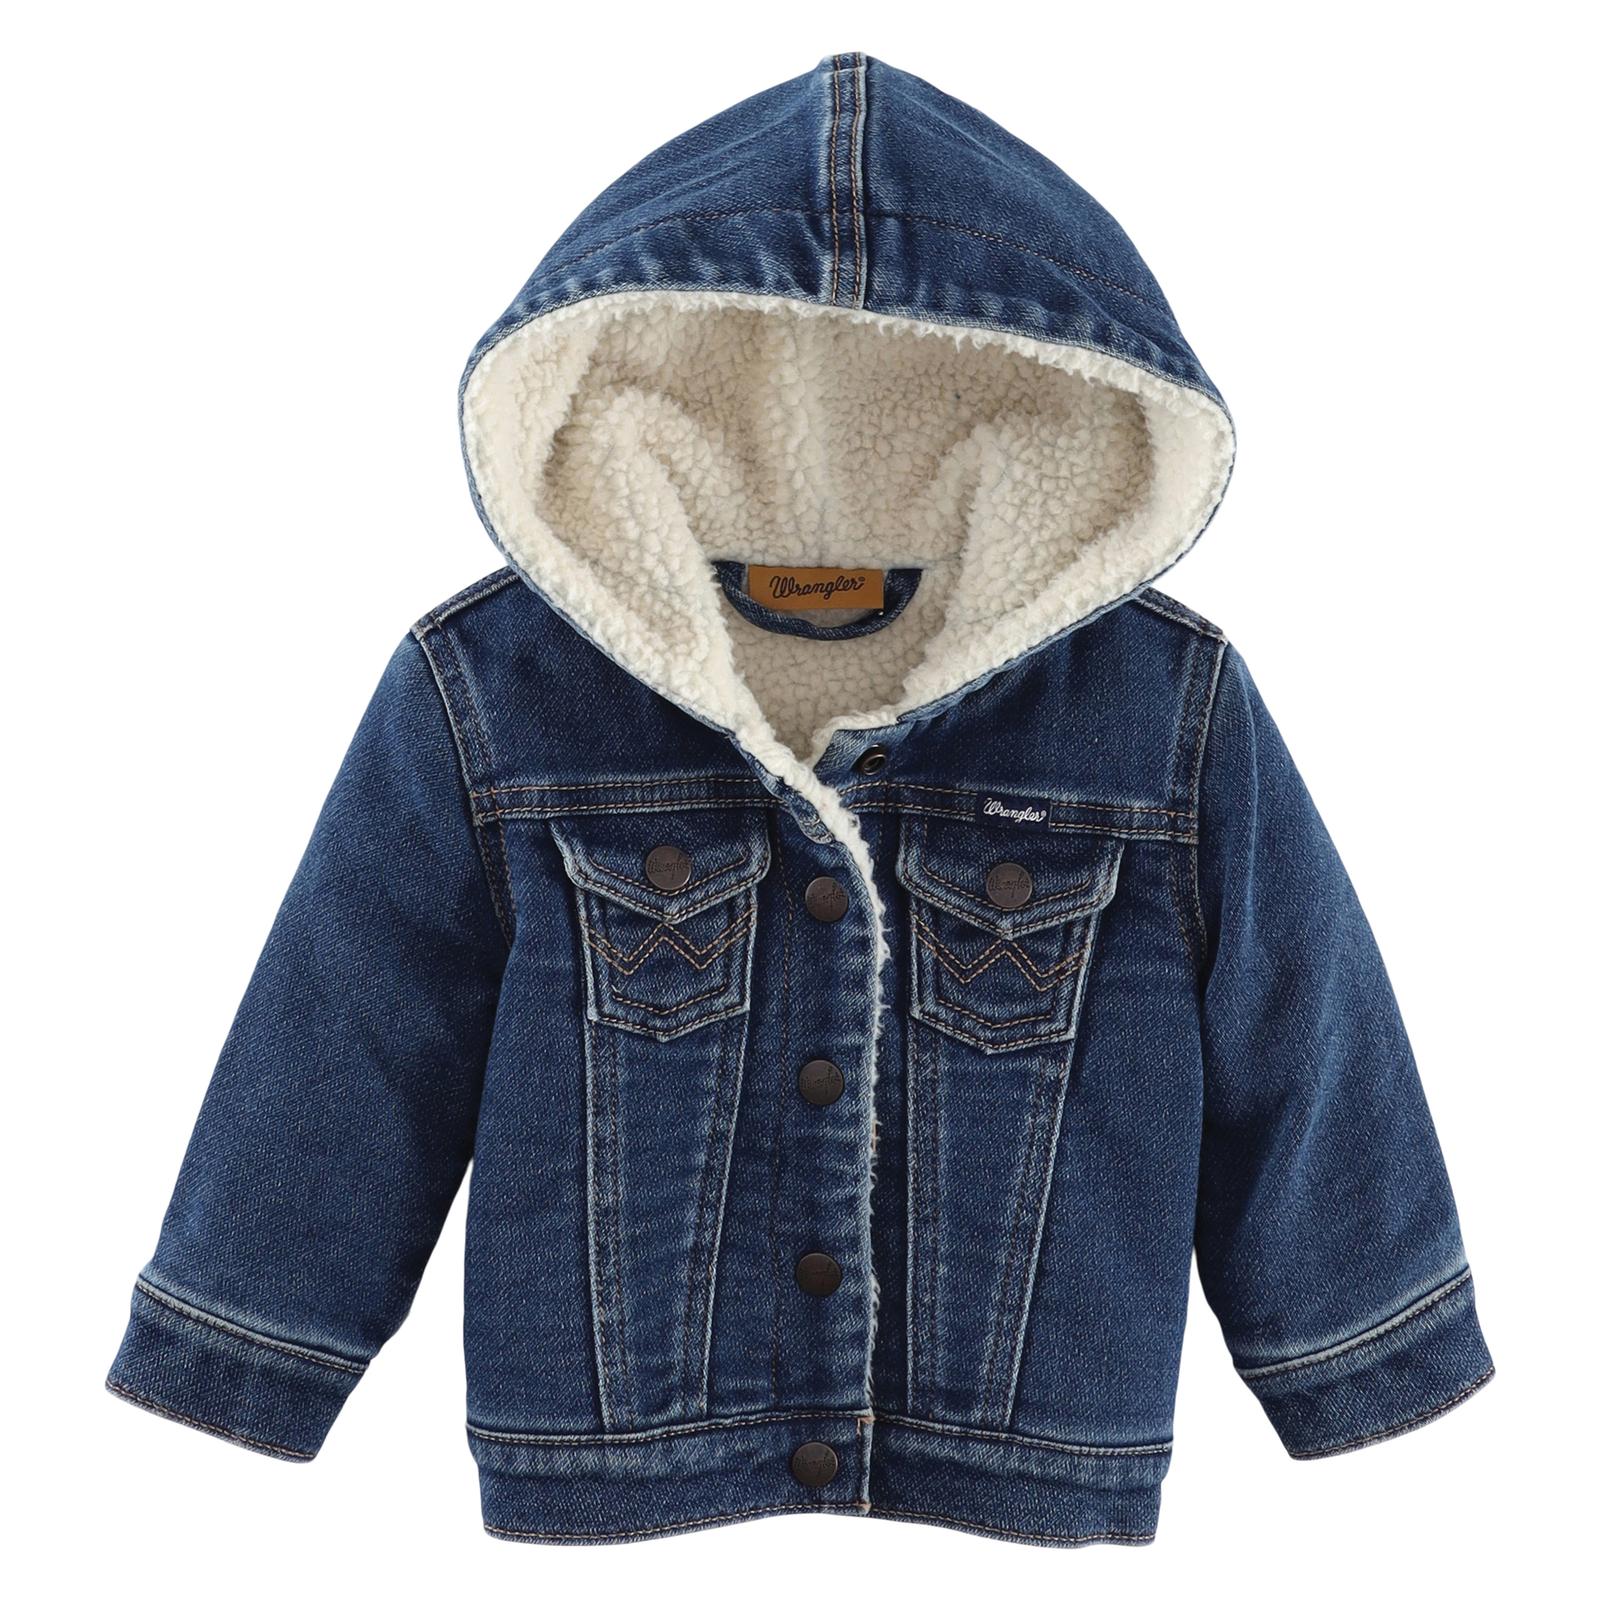 Wrangler Baby Girl Blue Denim Jacket